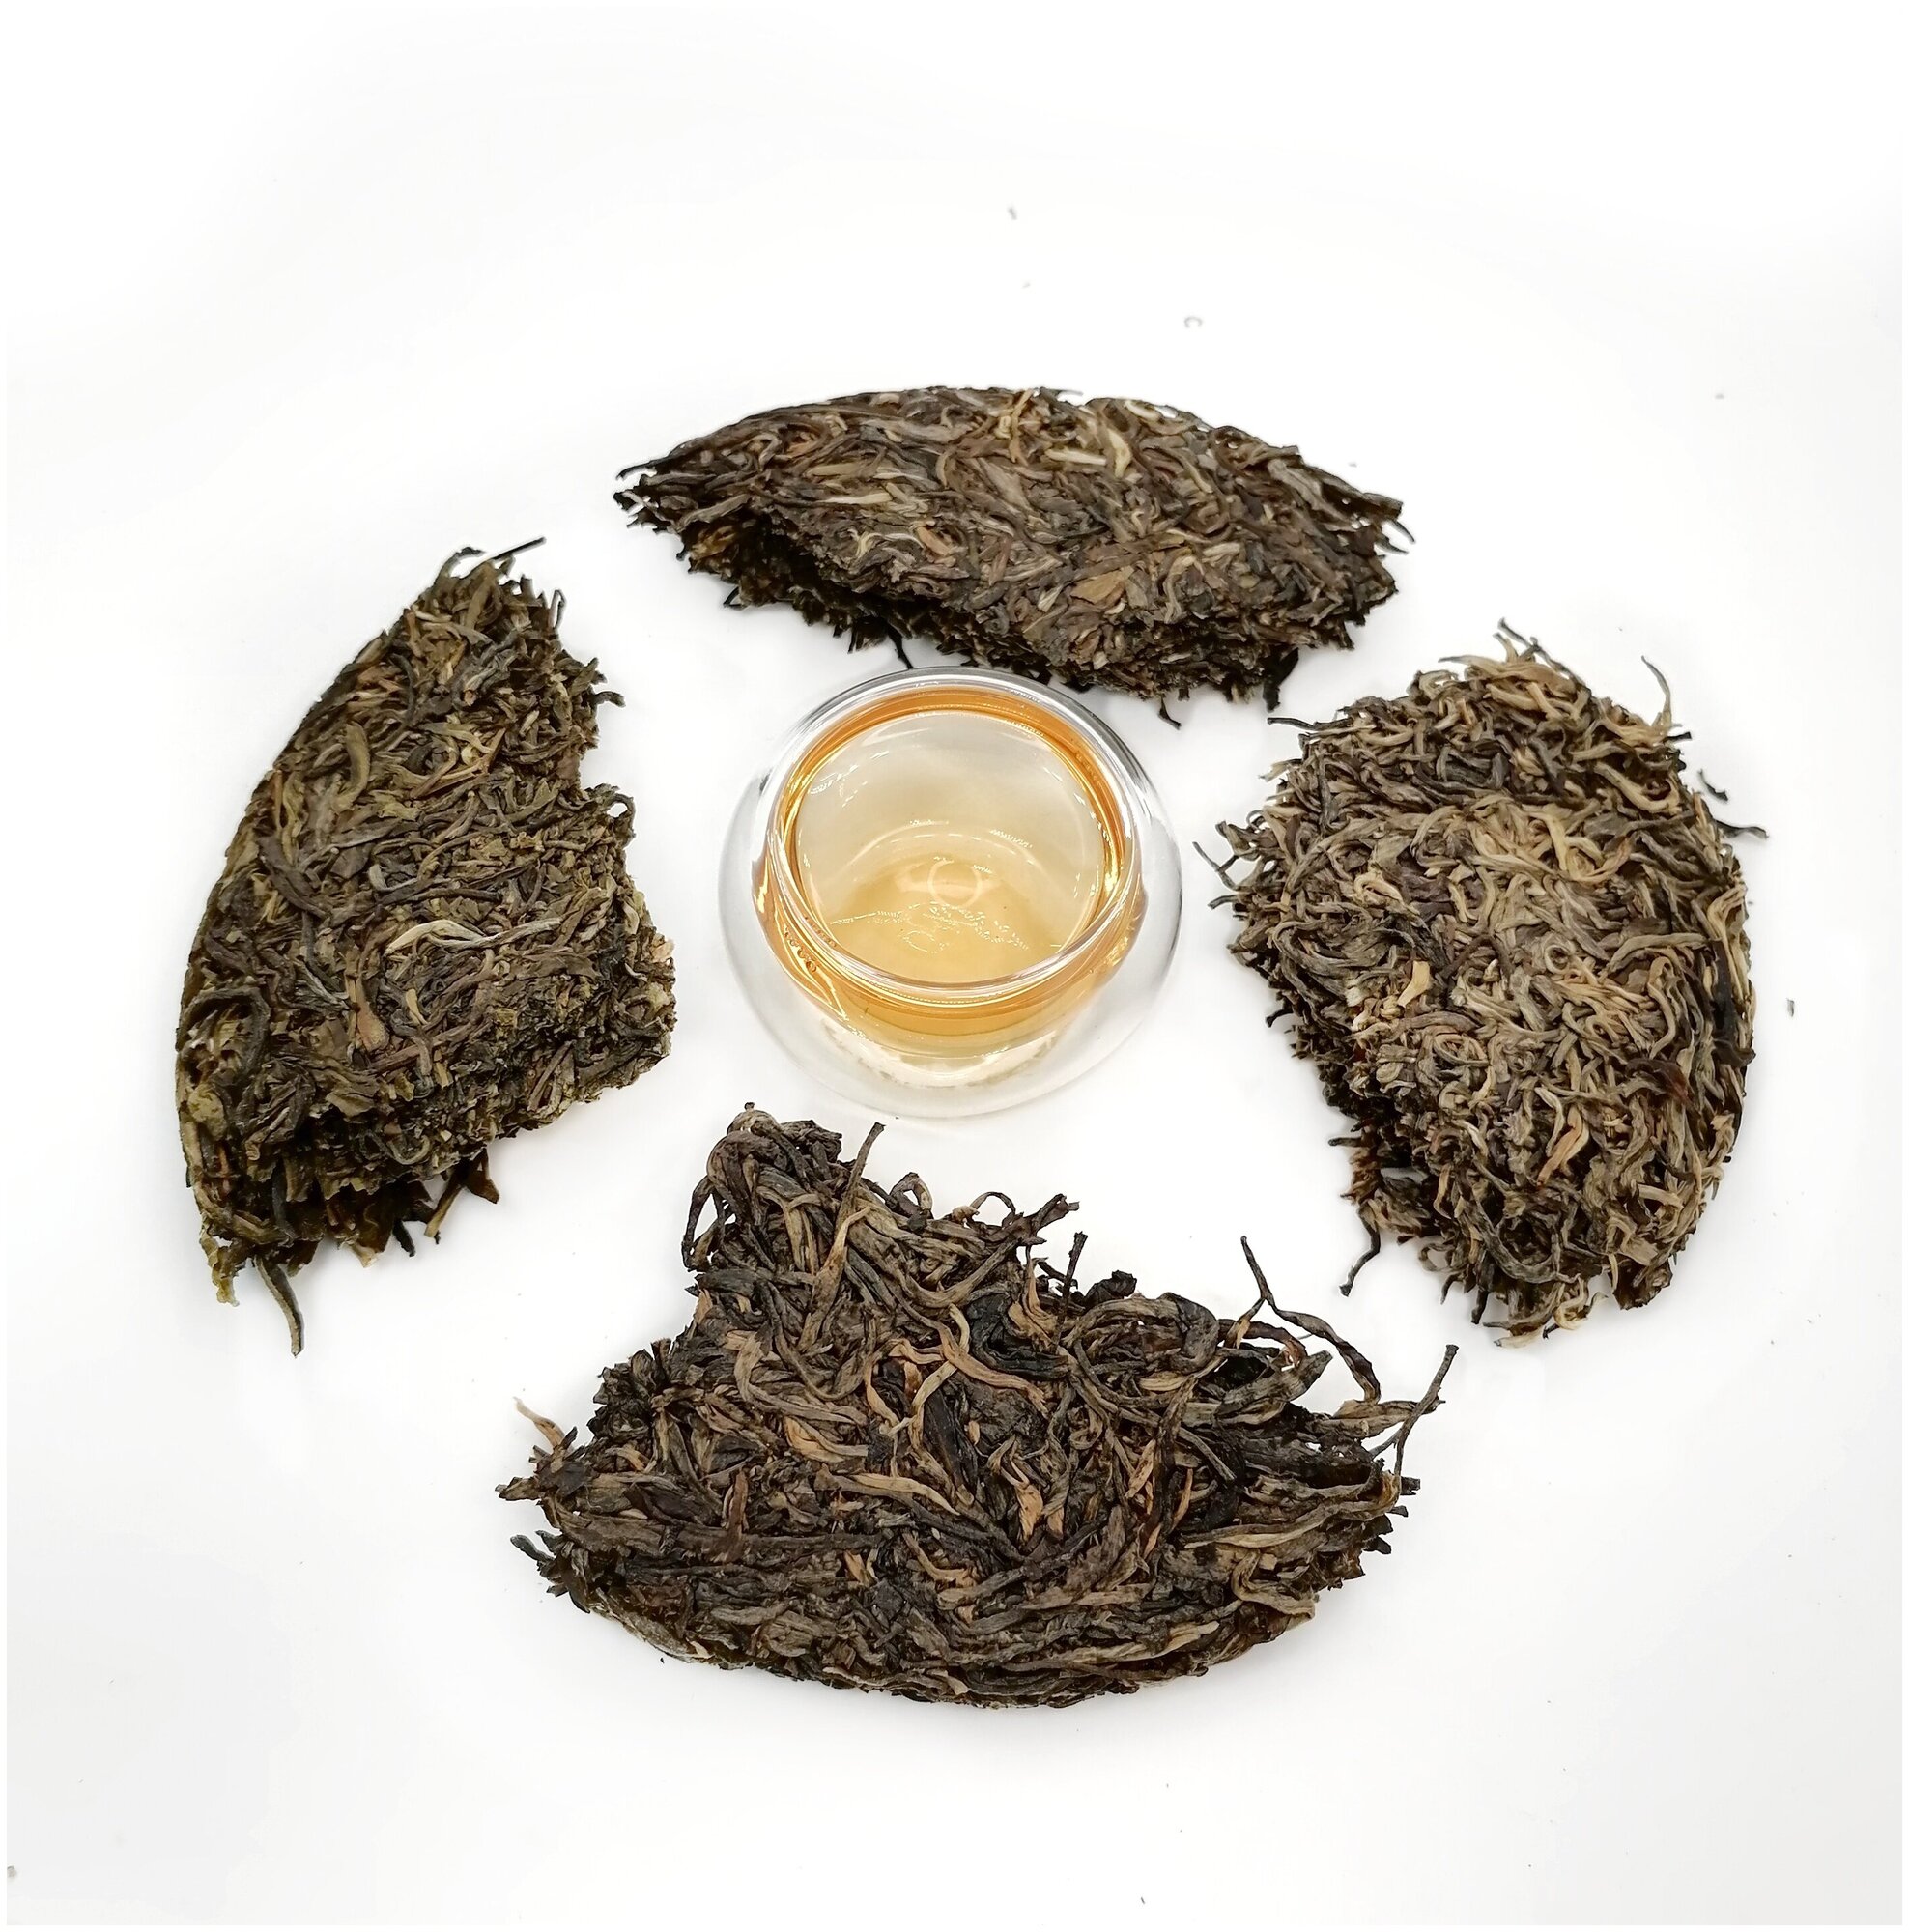 Пуэр сет (в разлом) - набор из 4х шэн пуэров по 50 гр / Прессованный листовой китайский чай